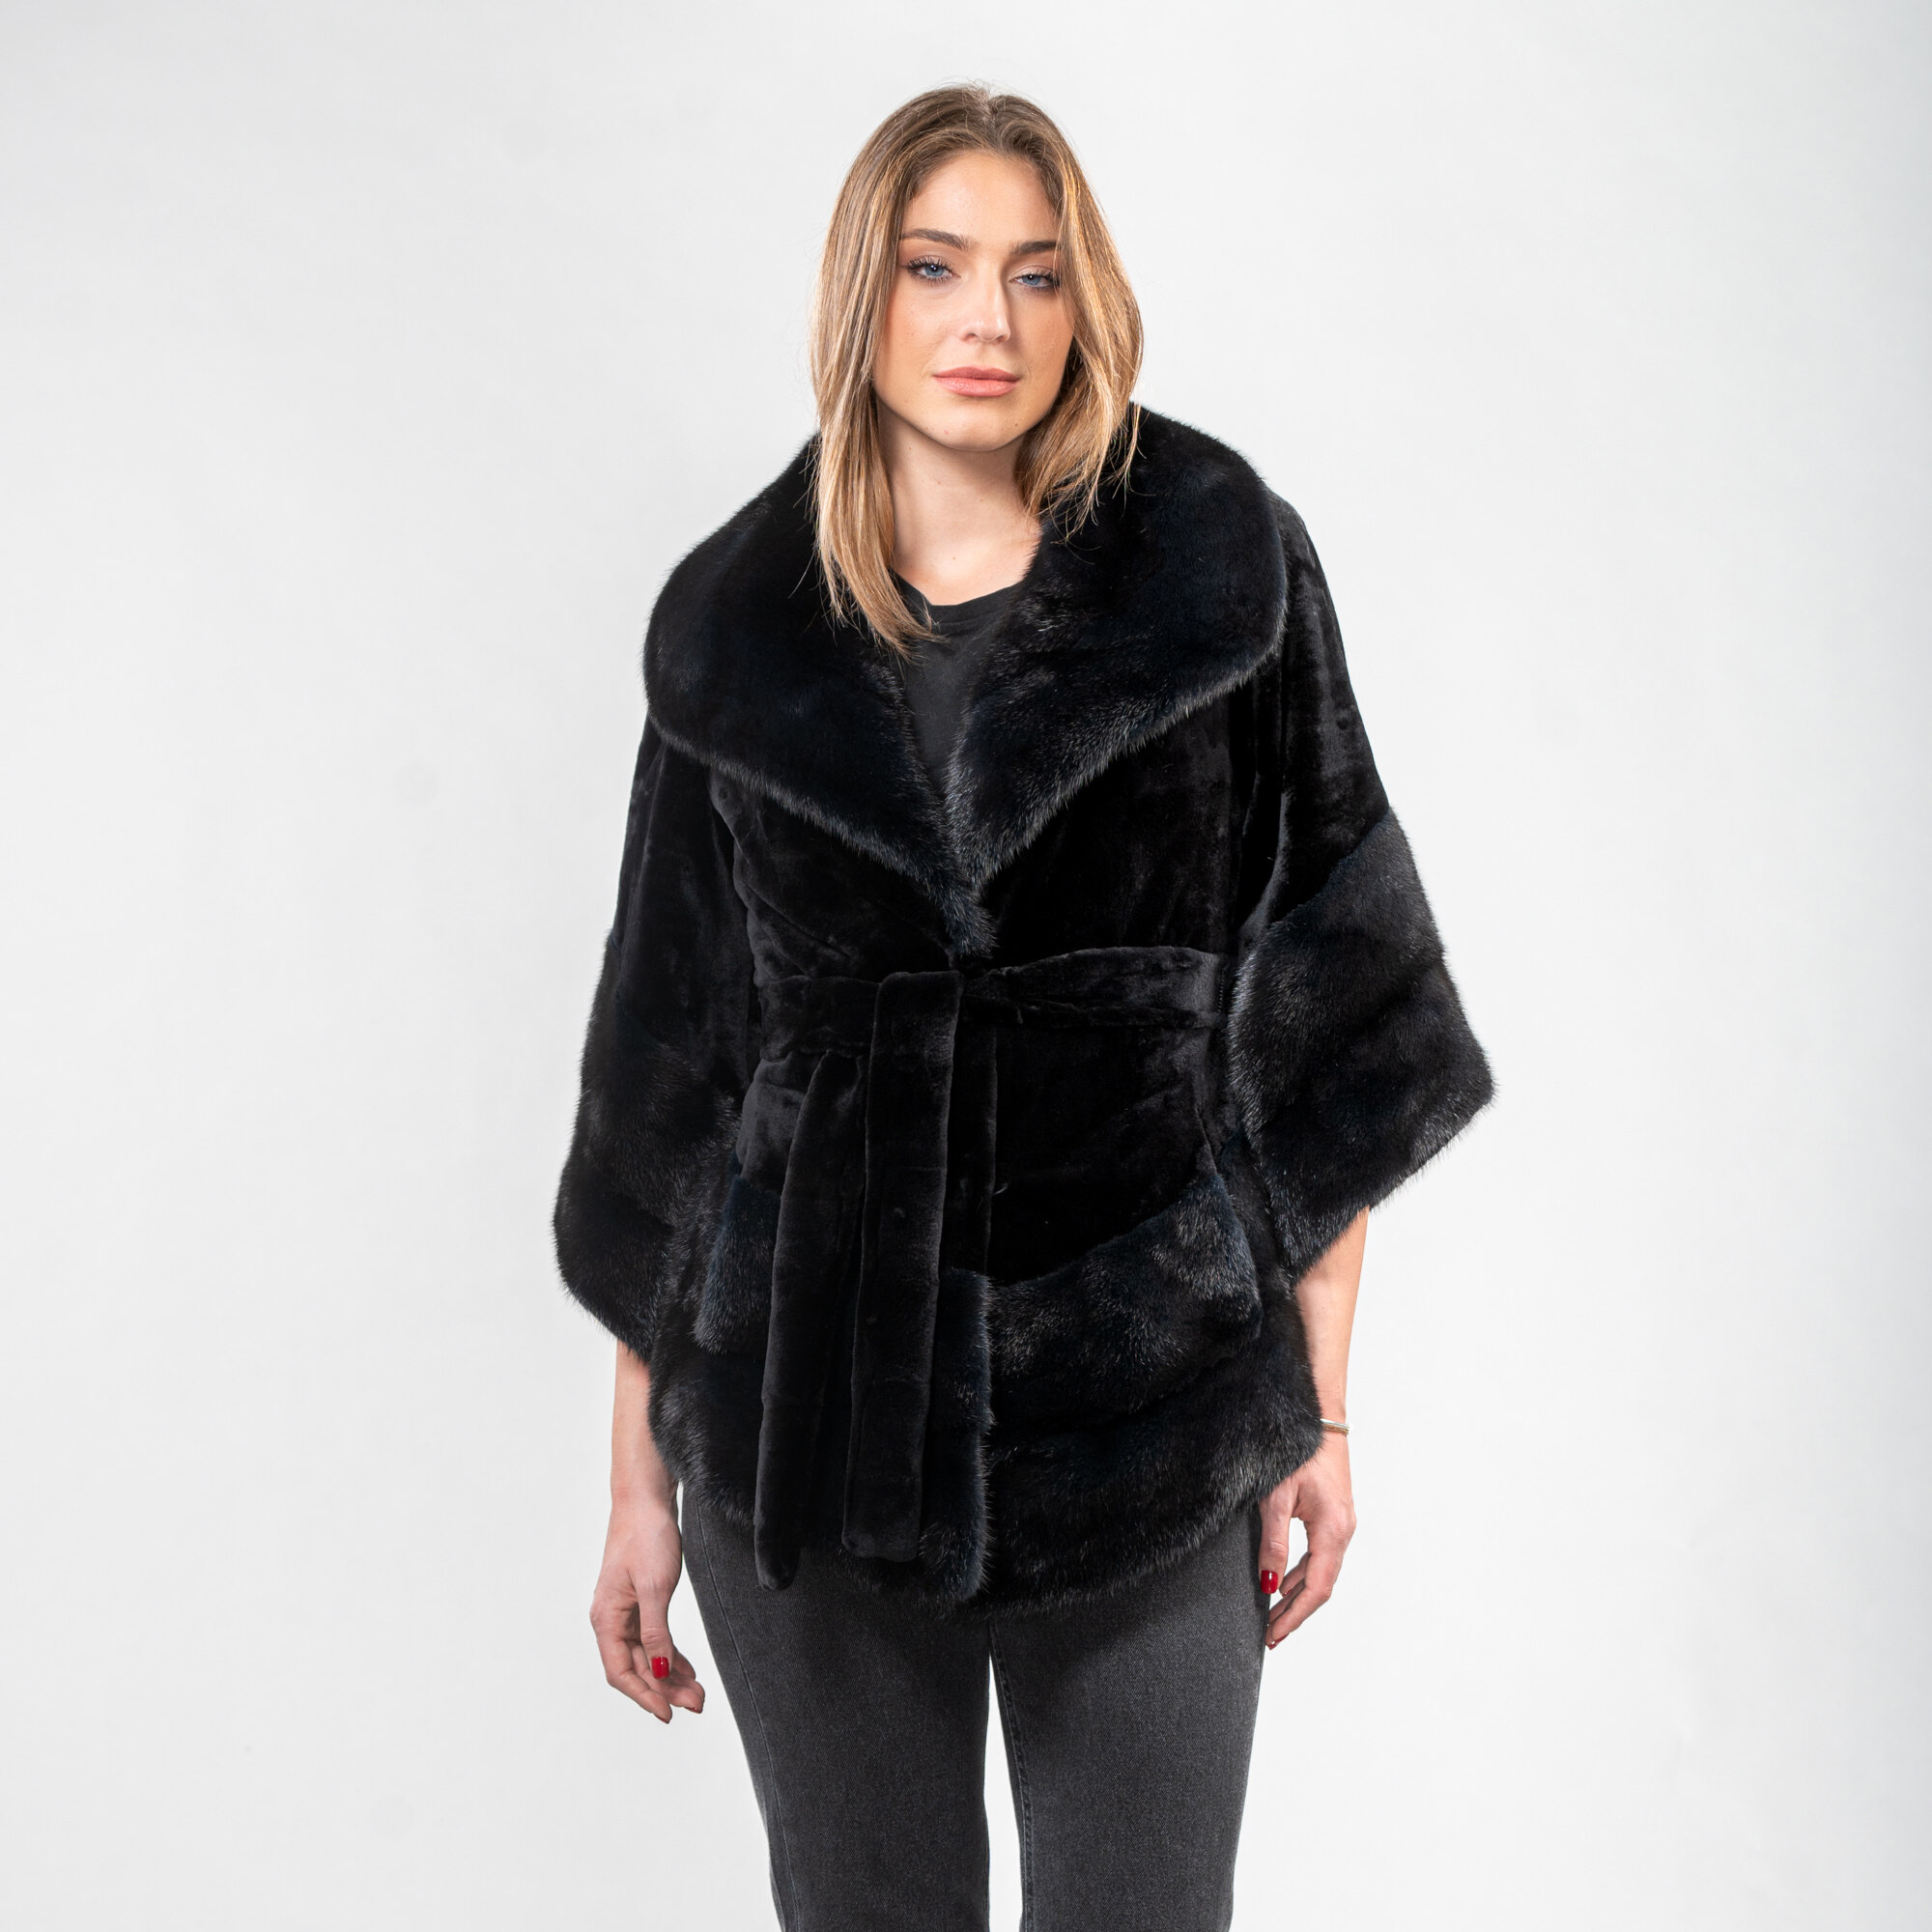 Mink fur belted jacket in black color